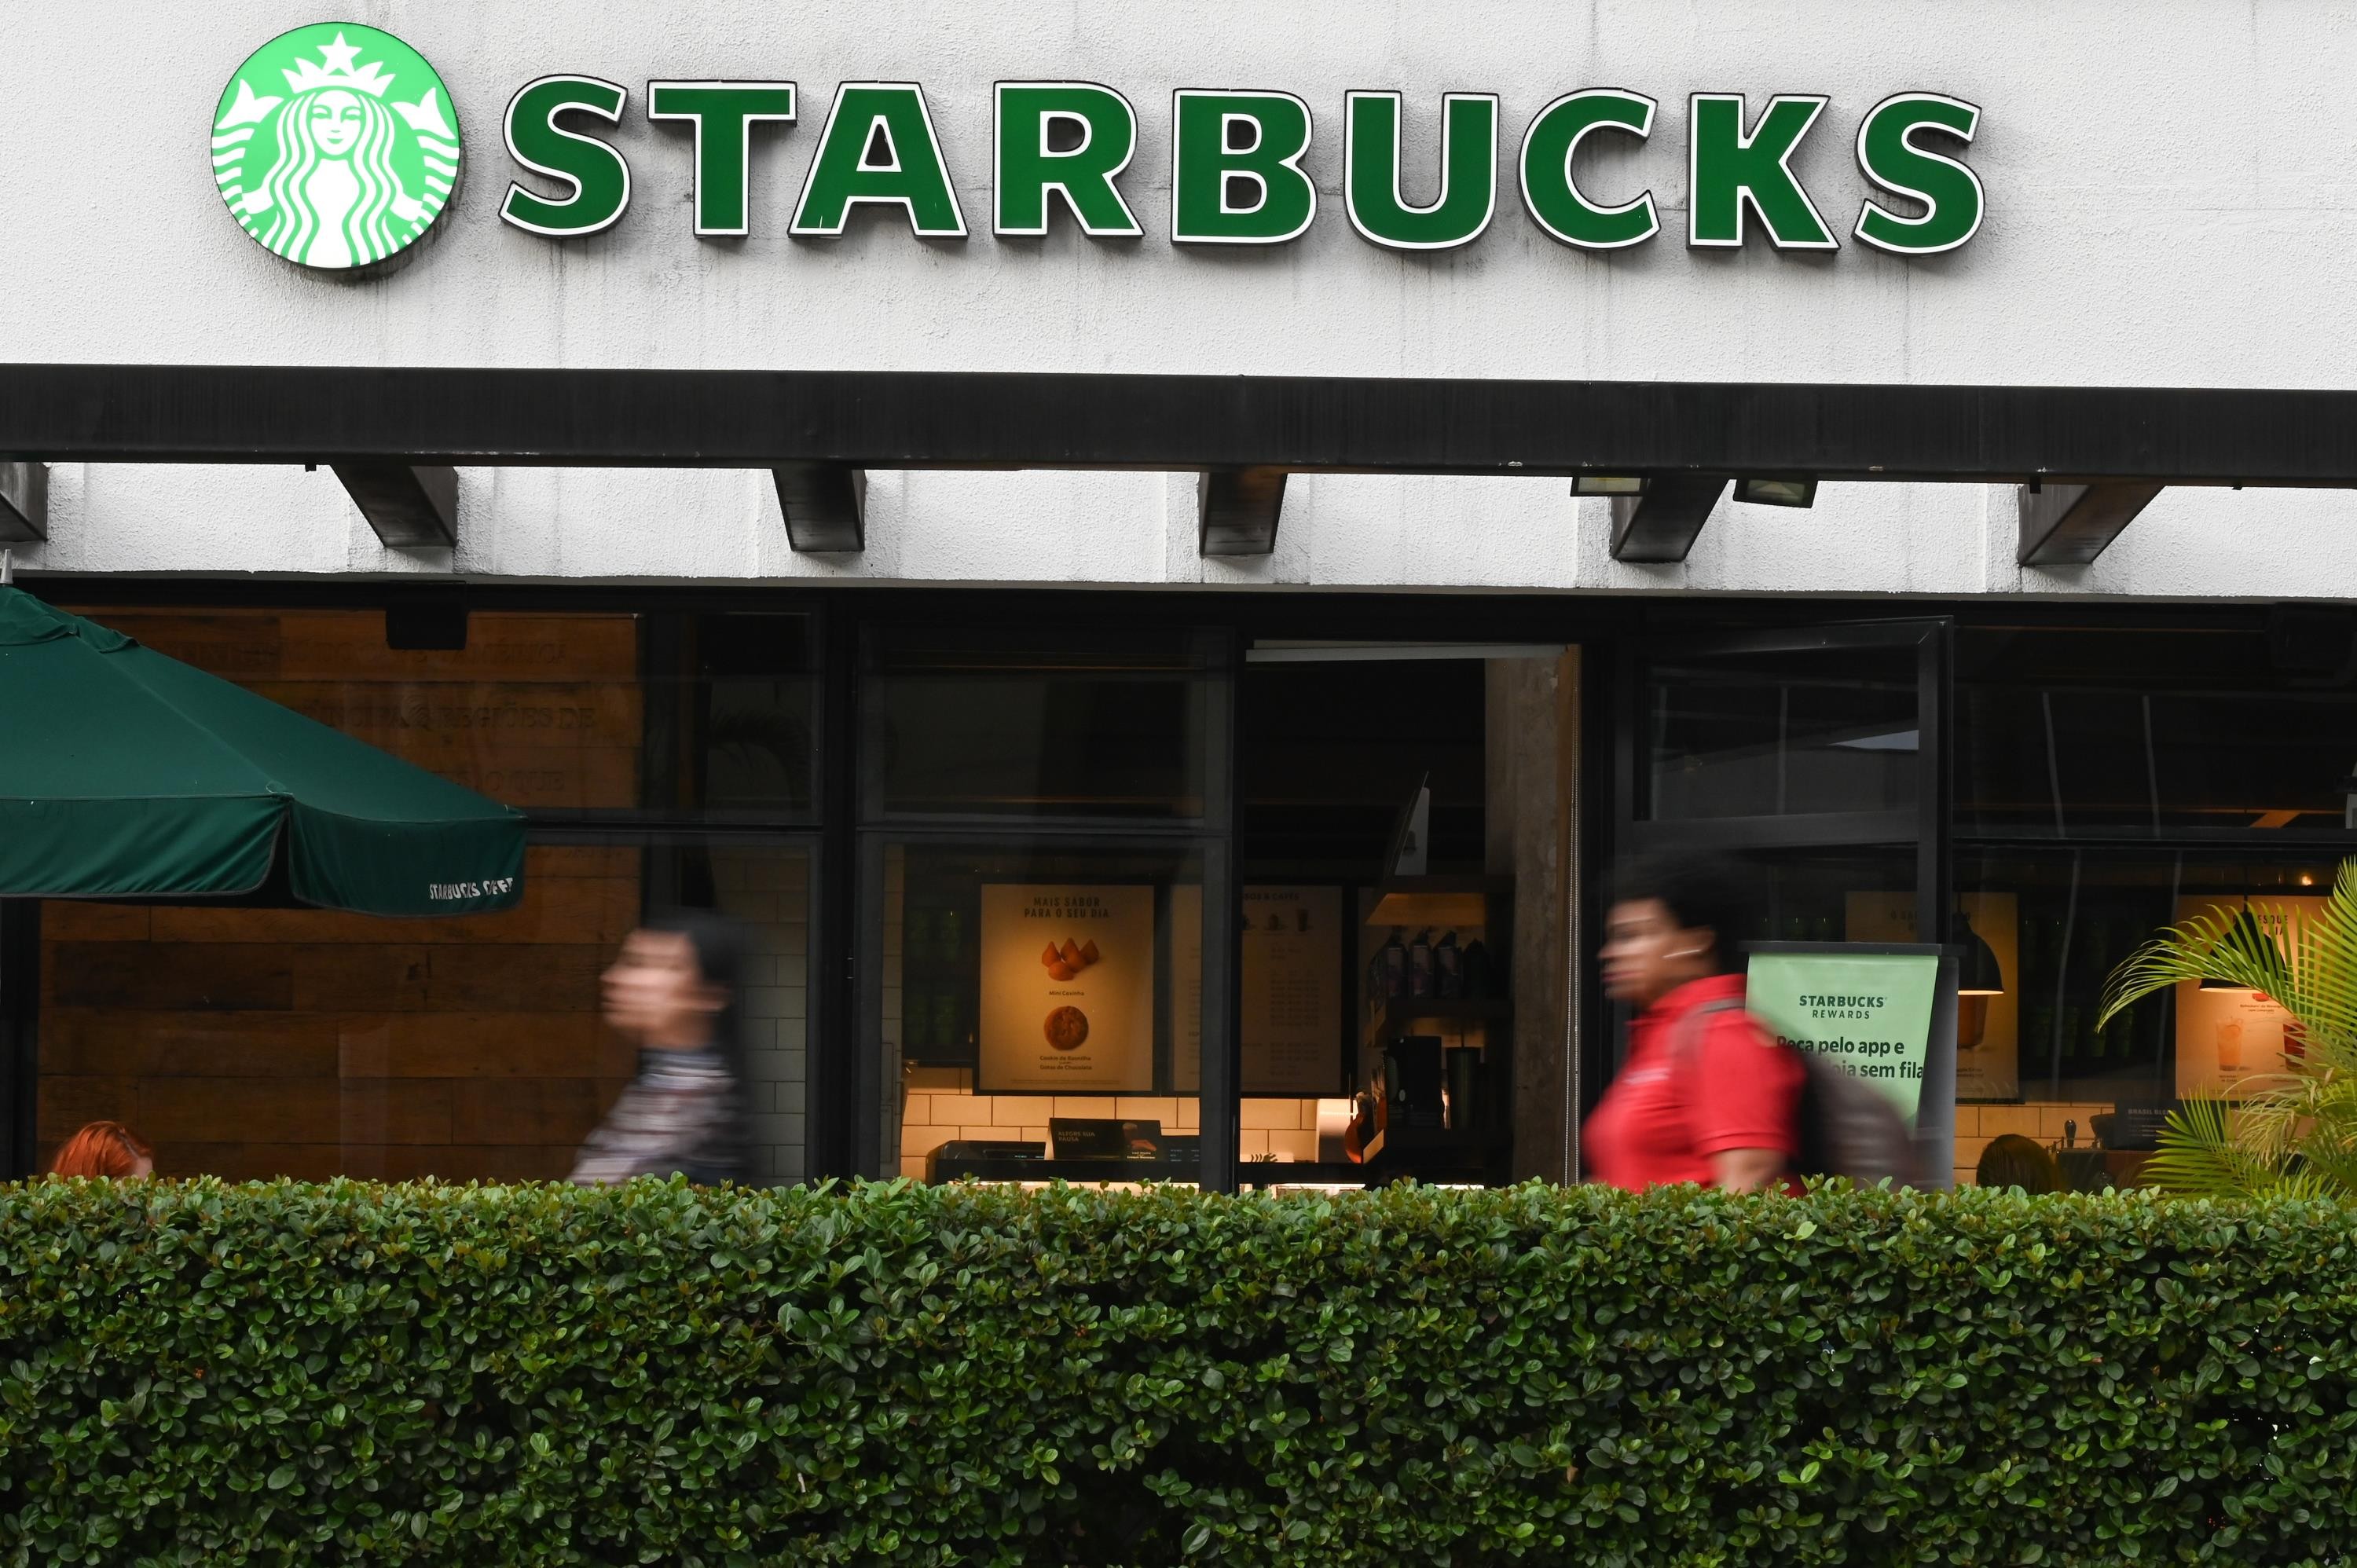 Justiça penhora 40% do salário de antigo chefe da Starbucks no Brasil